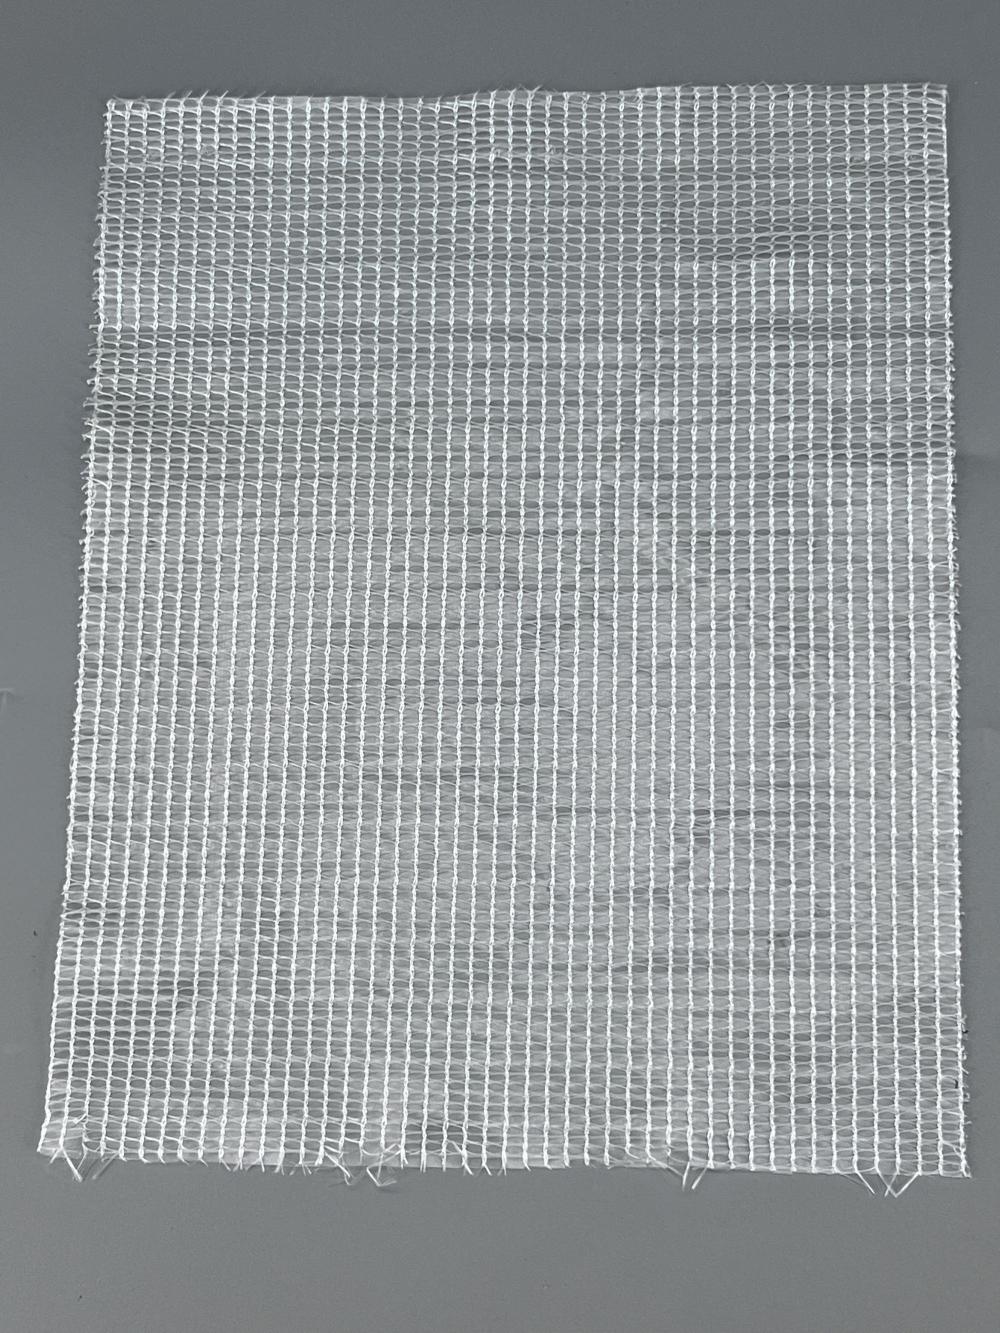 HDPE white aluminum foil sunshade net Durable UV